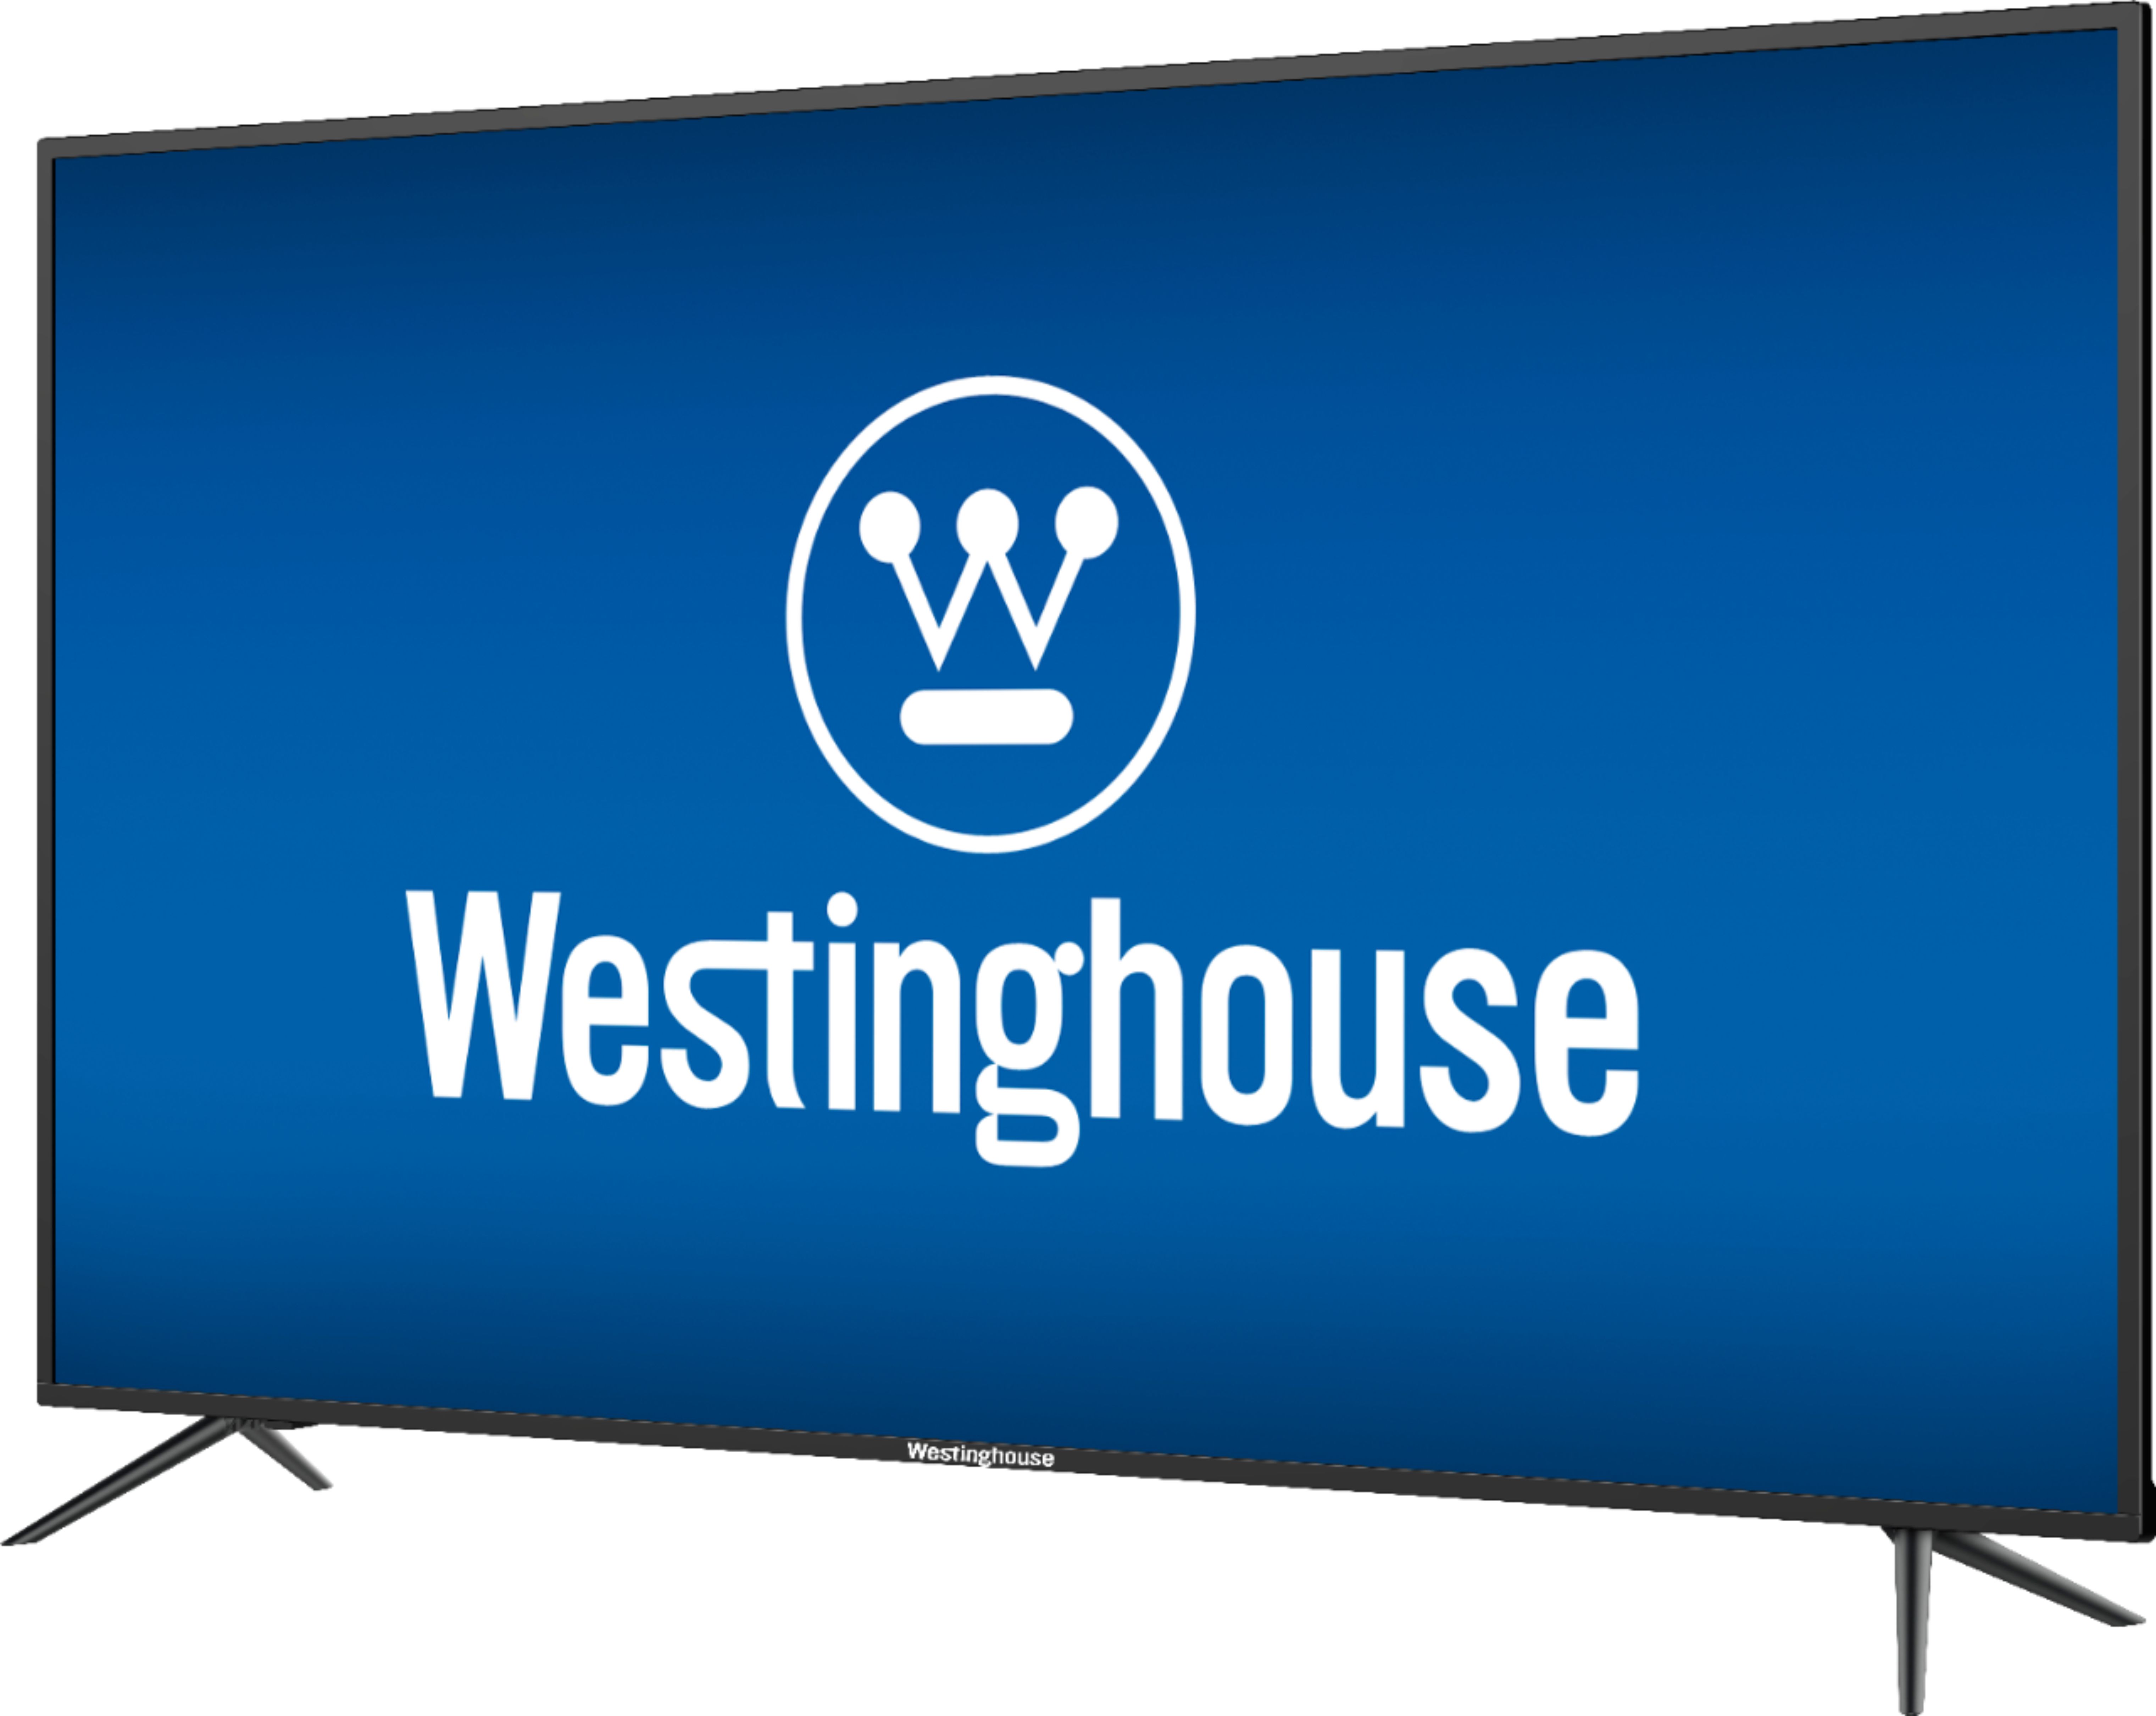 Westinghouse 32 Smart 720p HDTV Ubicaciondepersonas cdmx gob mx